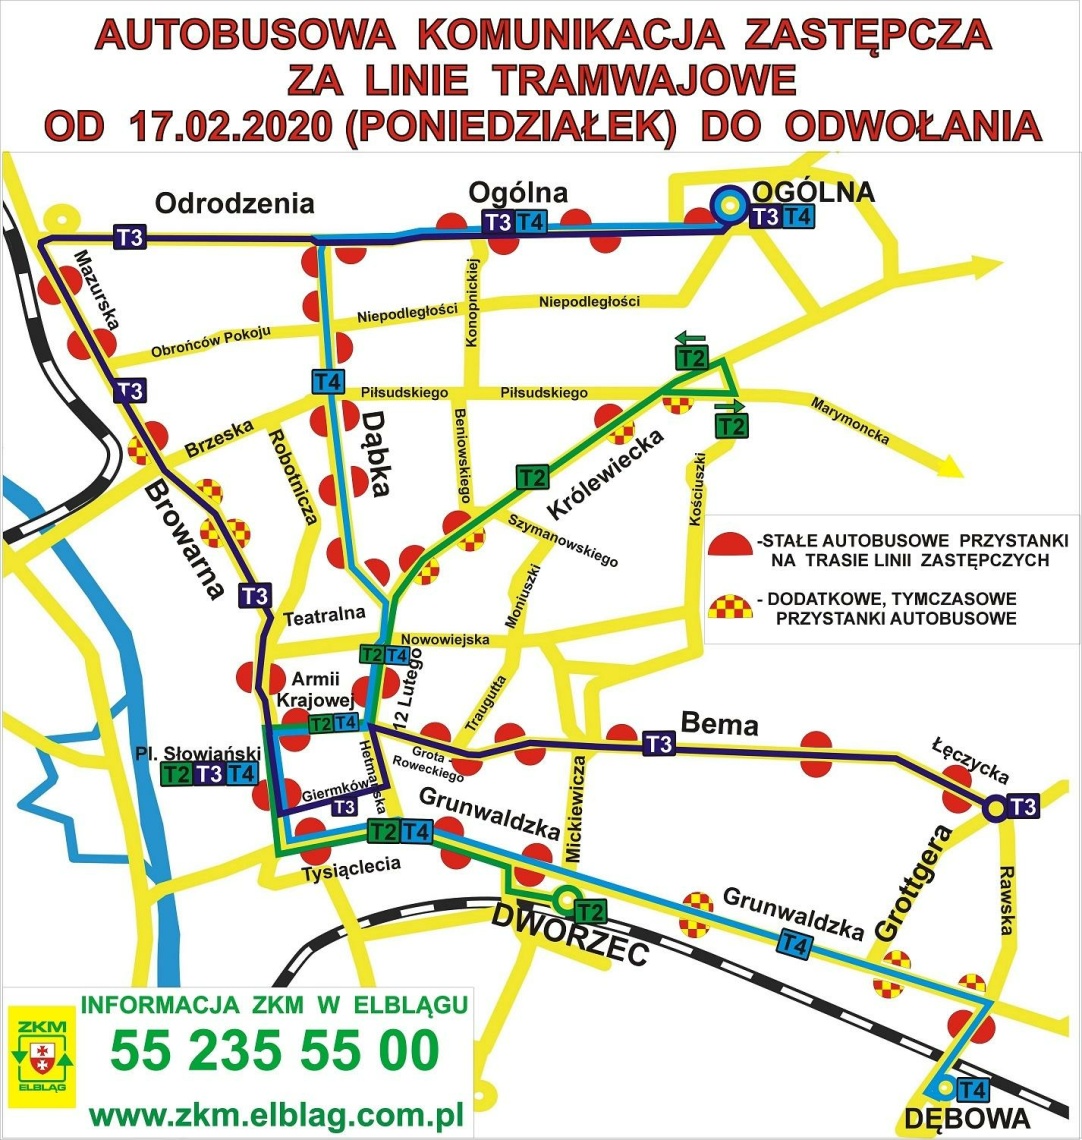 Strajk w Tramwajach Elbląskich - autobusowa komunikacja zastępcza za linie tramwajowe od 17.02.2020